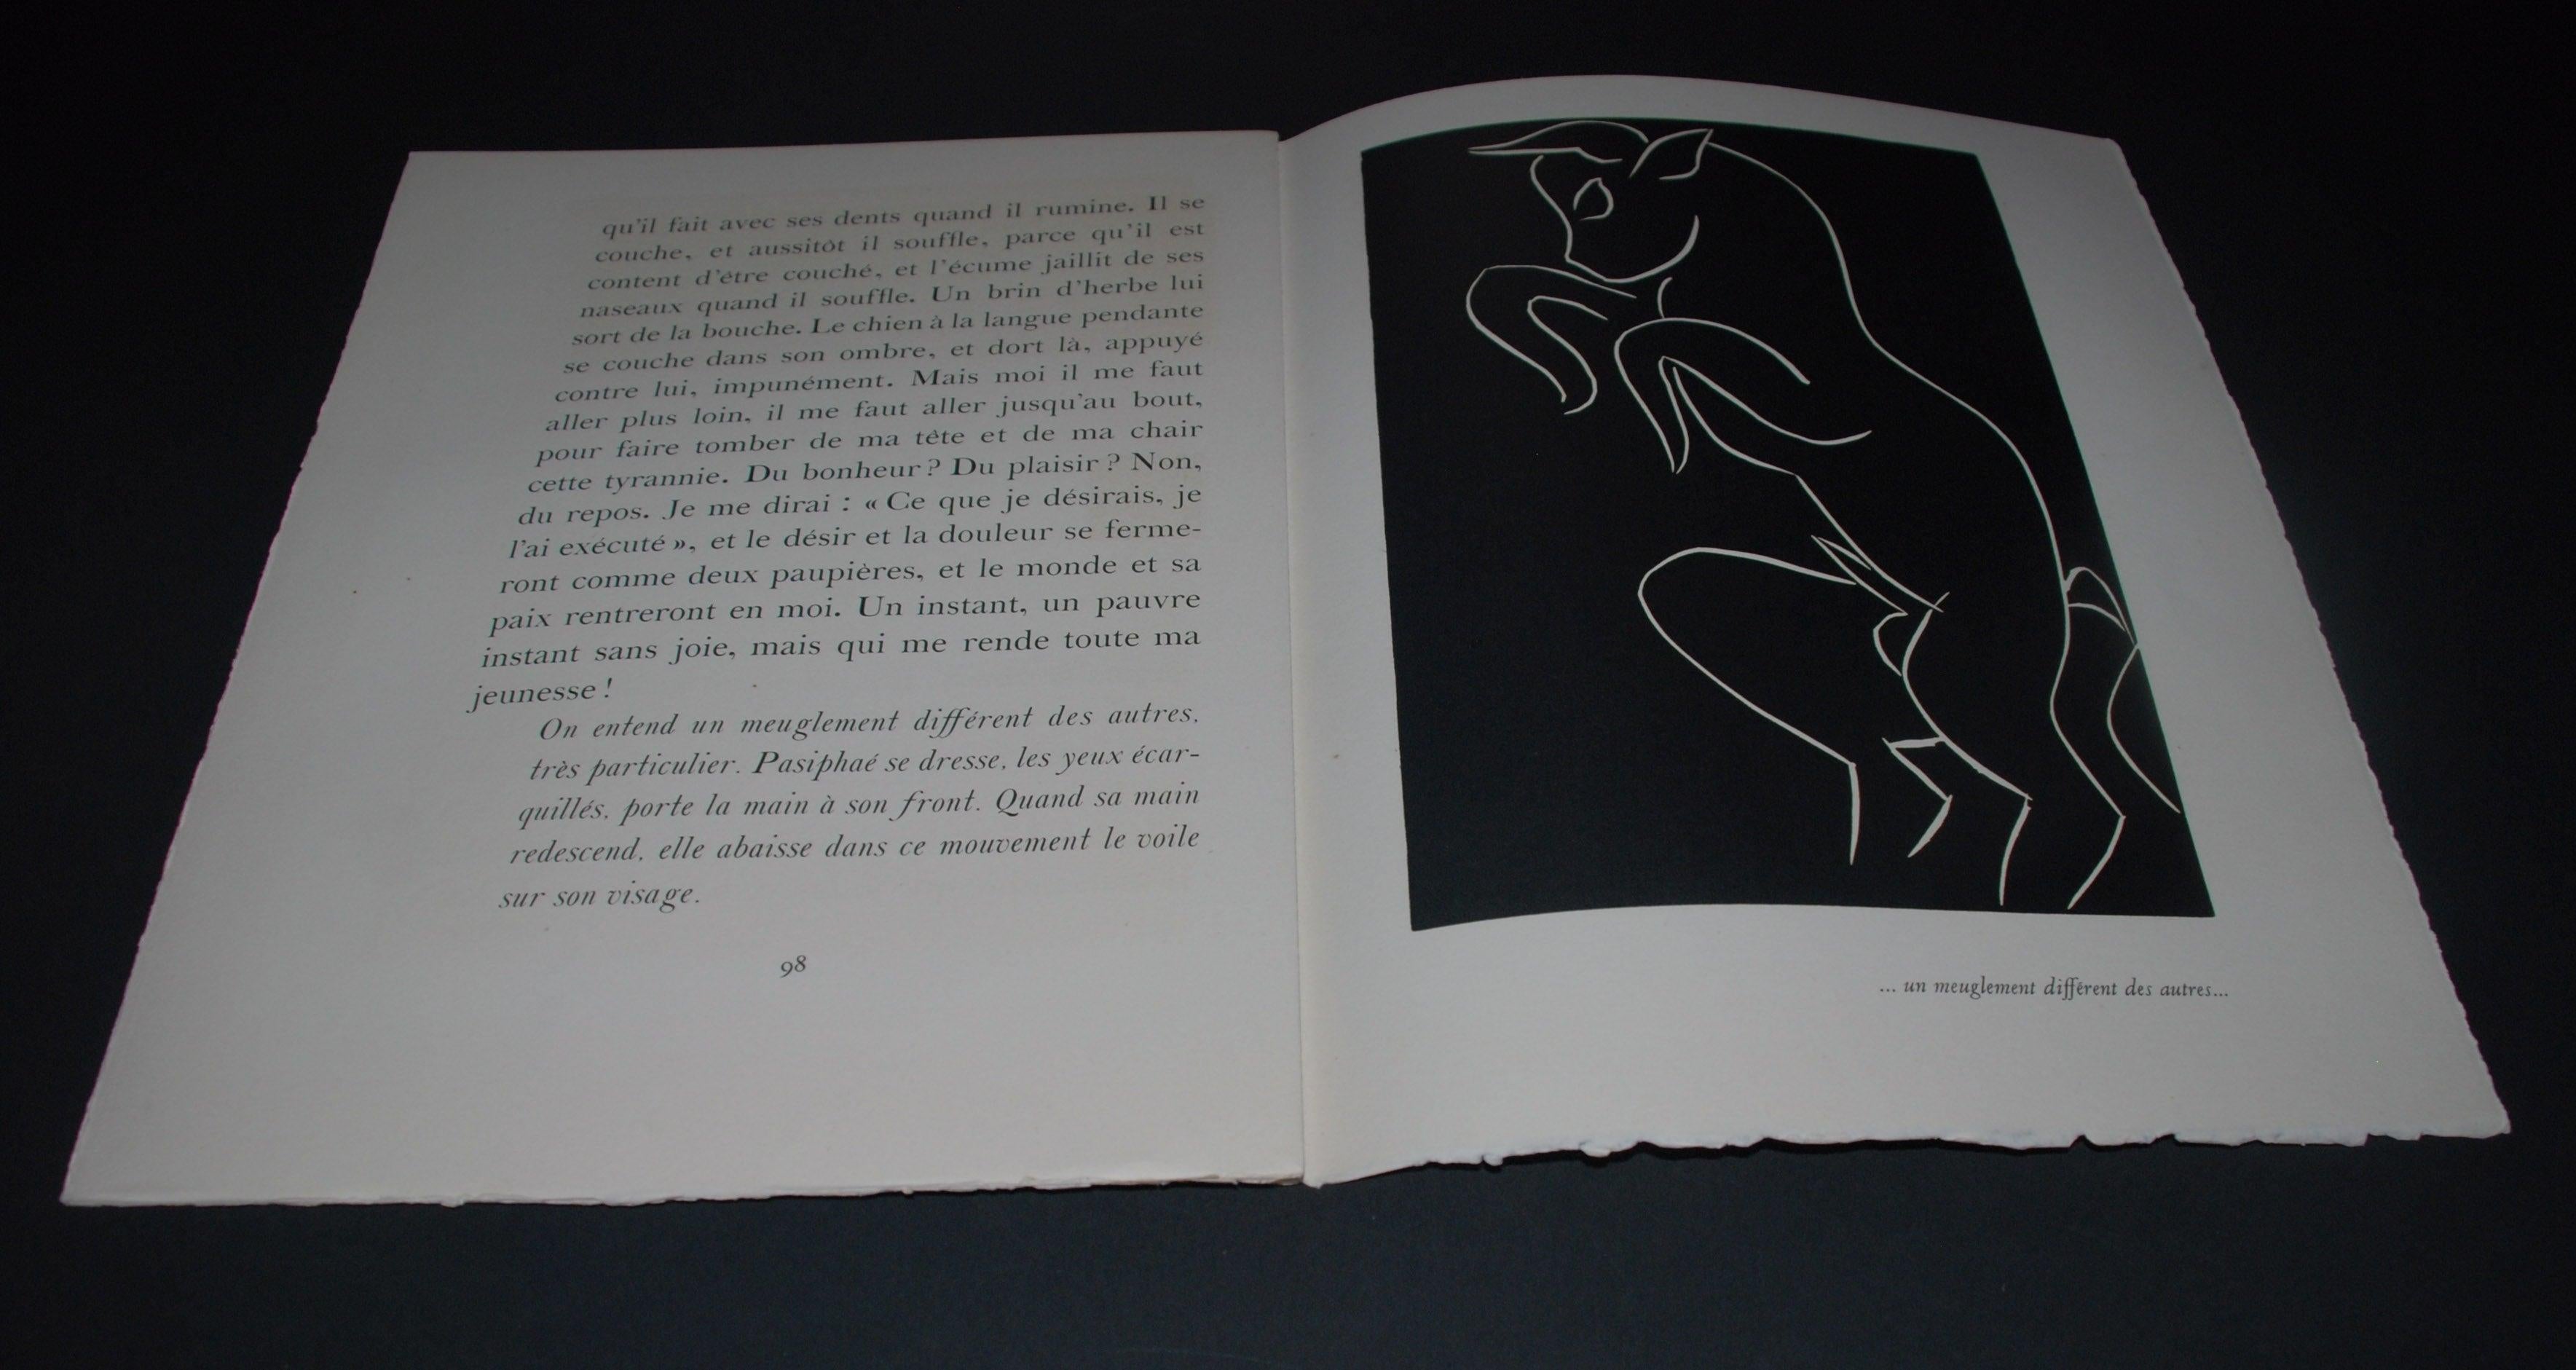 Assiette 15 : Un Meuglement Different des Autres (un maïs différent des autres) - Noir Animal Print par Henri Matisse